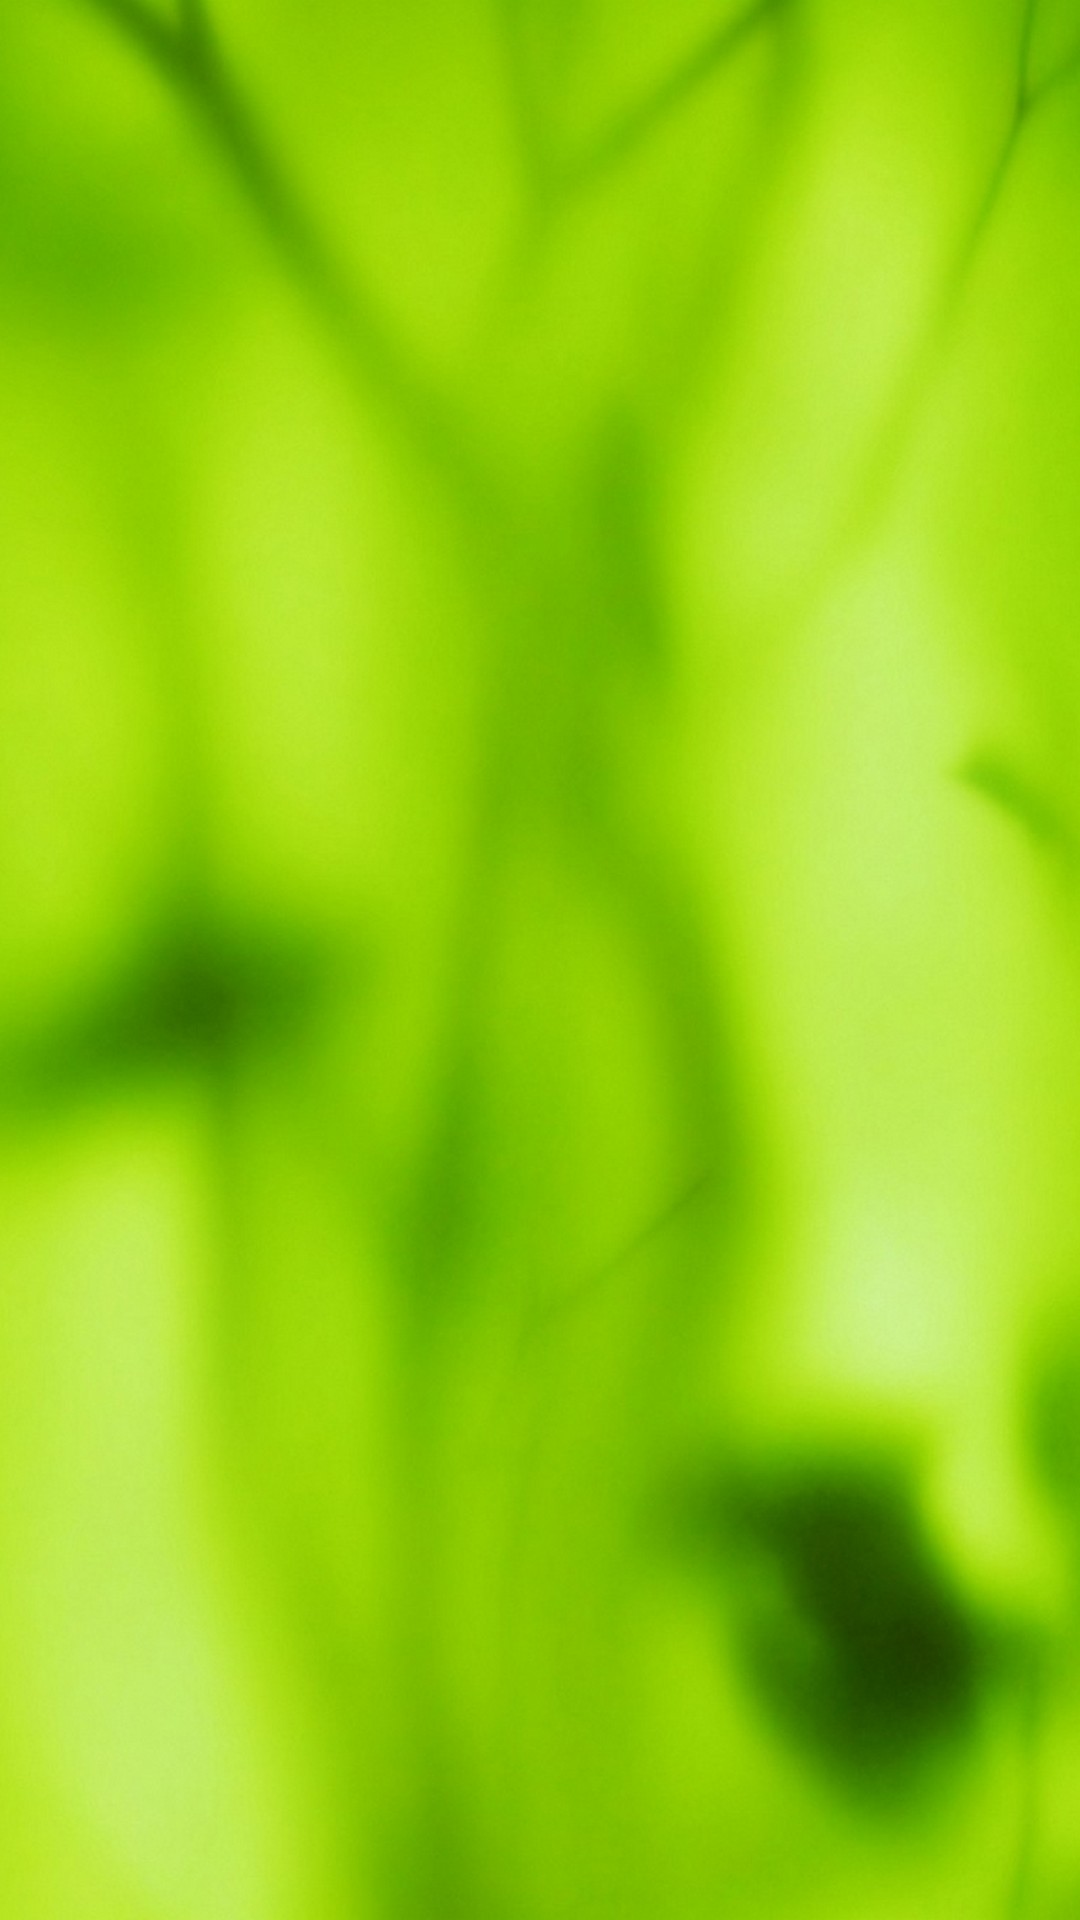 Green Colour Wallpaper - Iphone Wallpaper Green Color - HD Wallpaper 